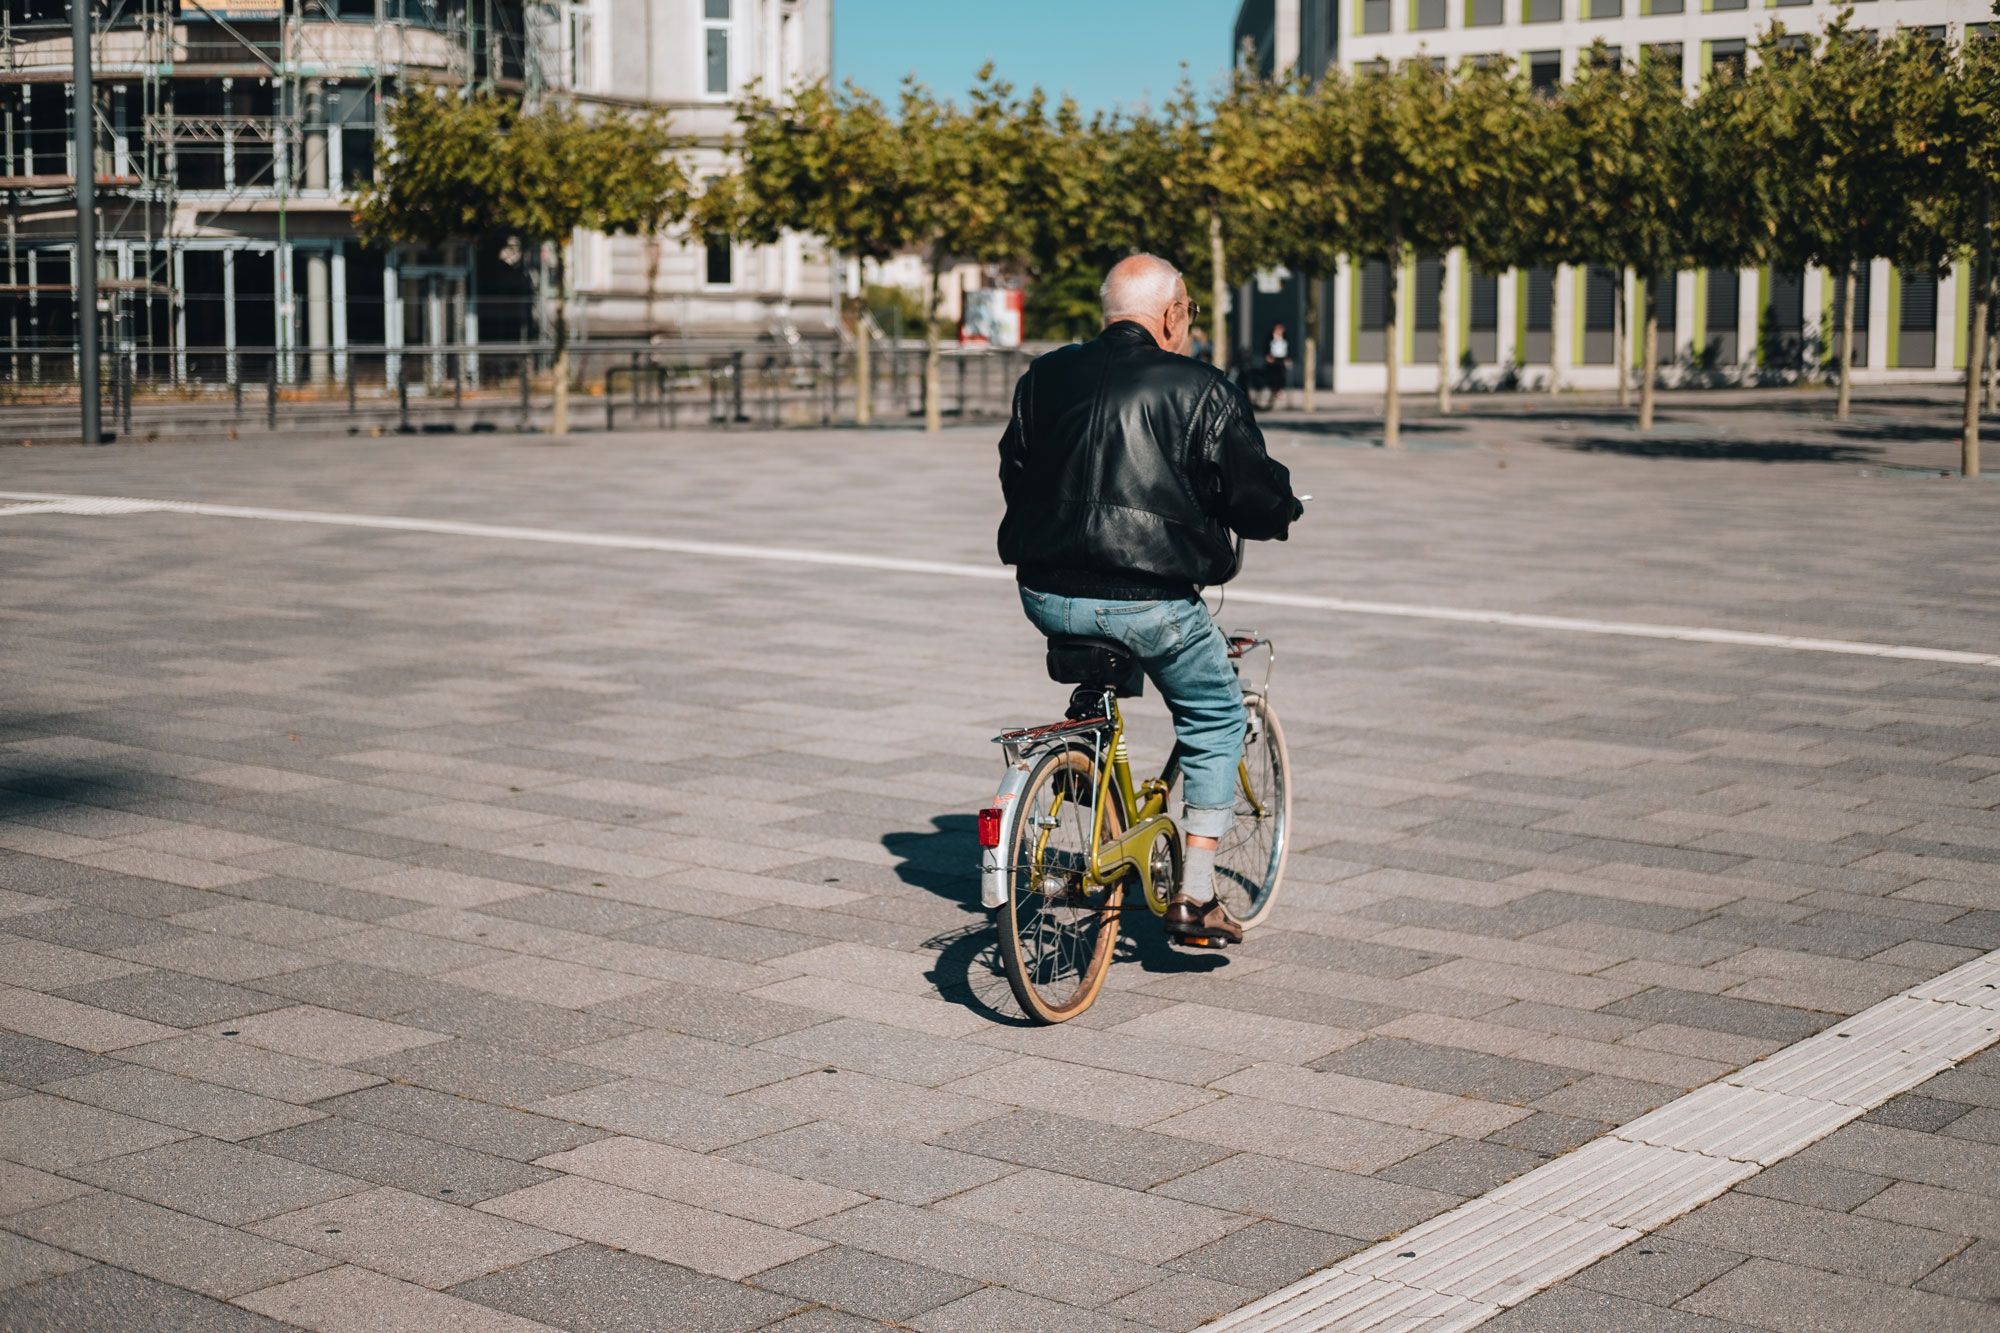 {:gb}An elderly man on a yellow bicycle rides an asphalt square.{:}{:de}Ein älterer Mann auf einem gelben Fahrrad fährt über einen asphaltierten Platz.{:}